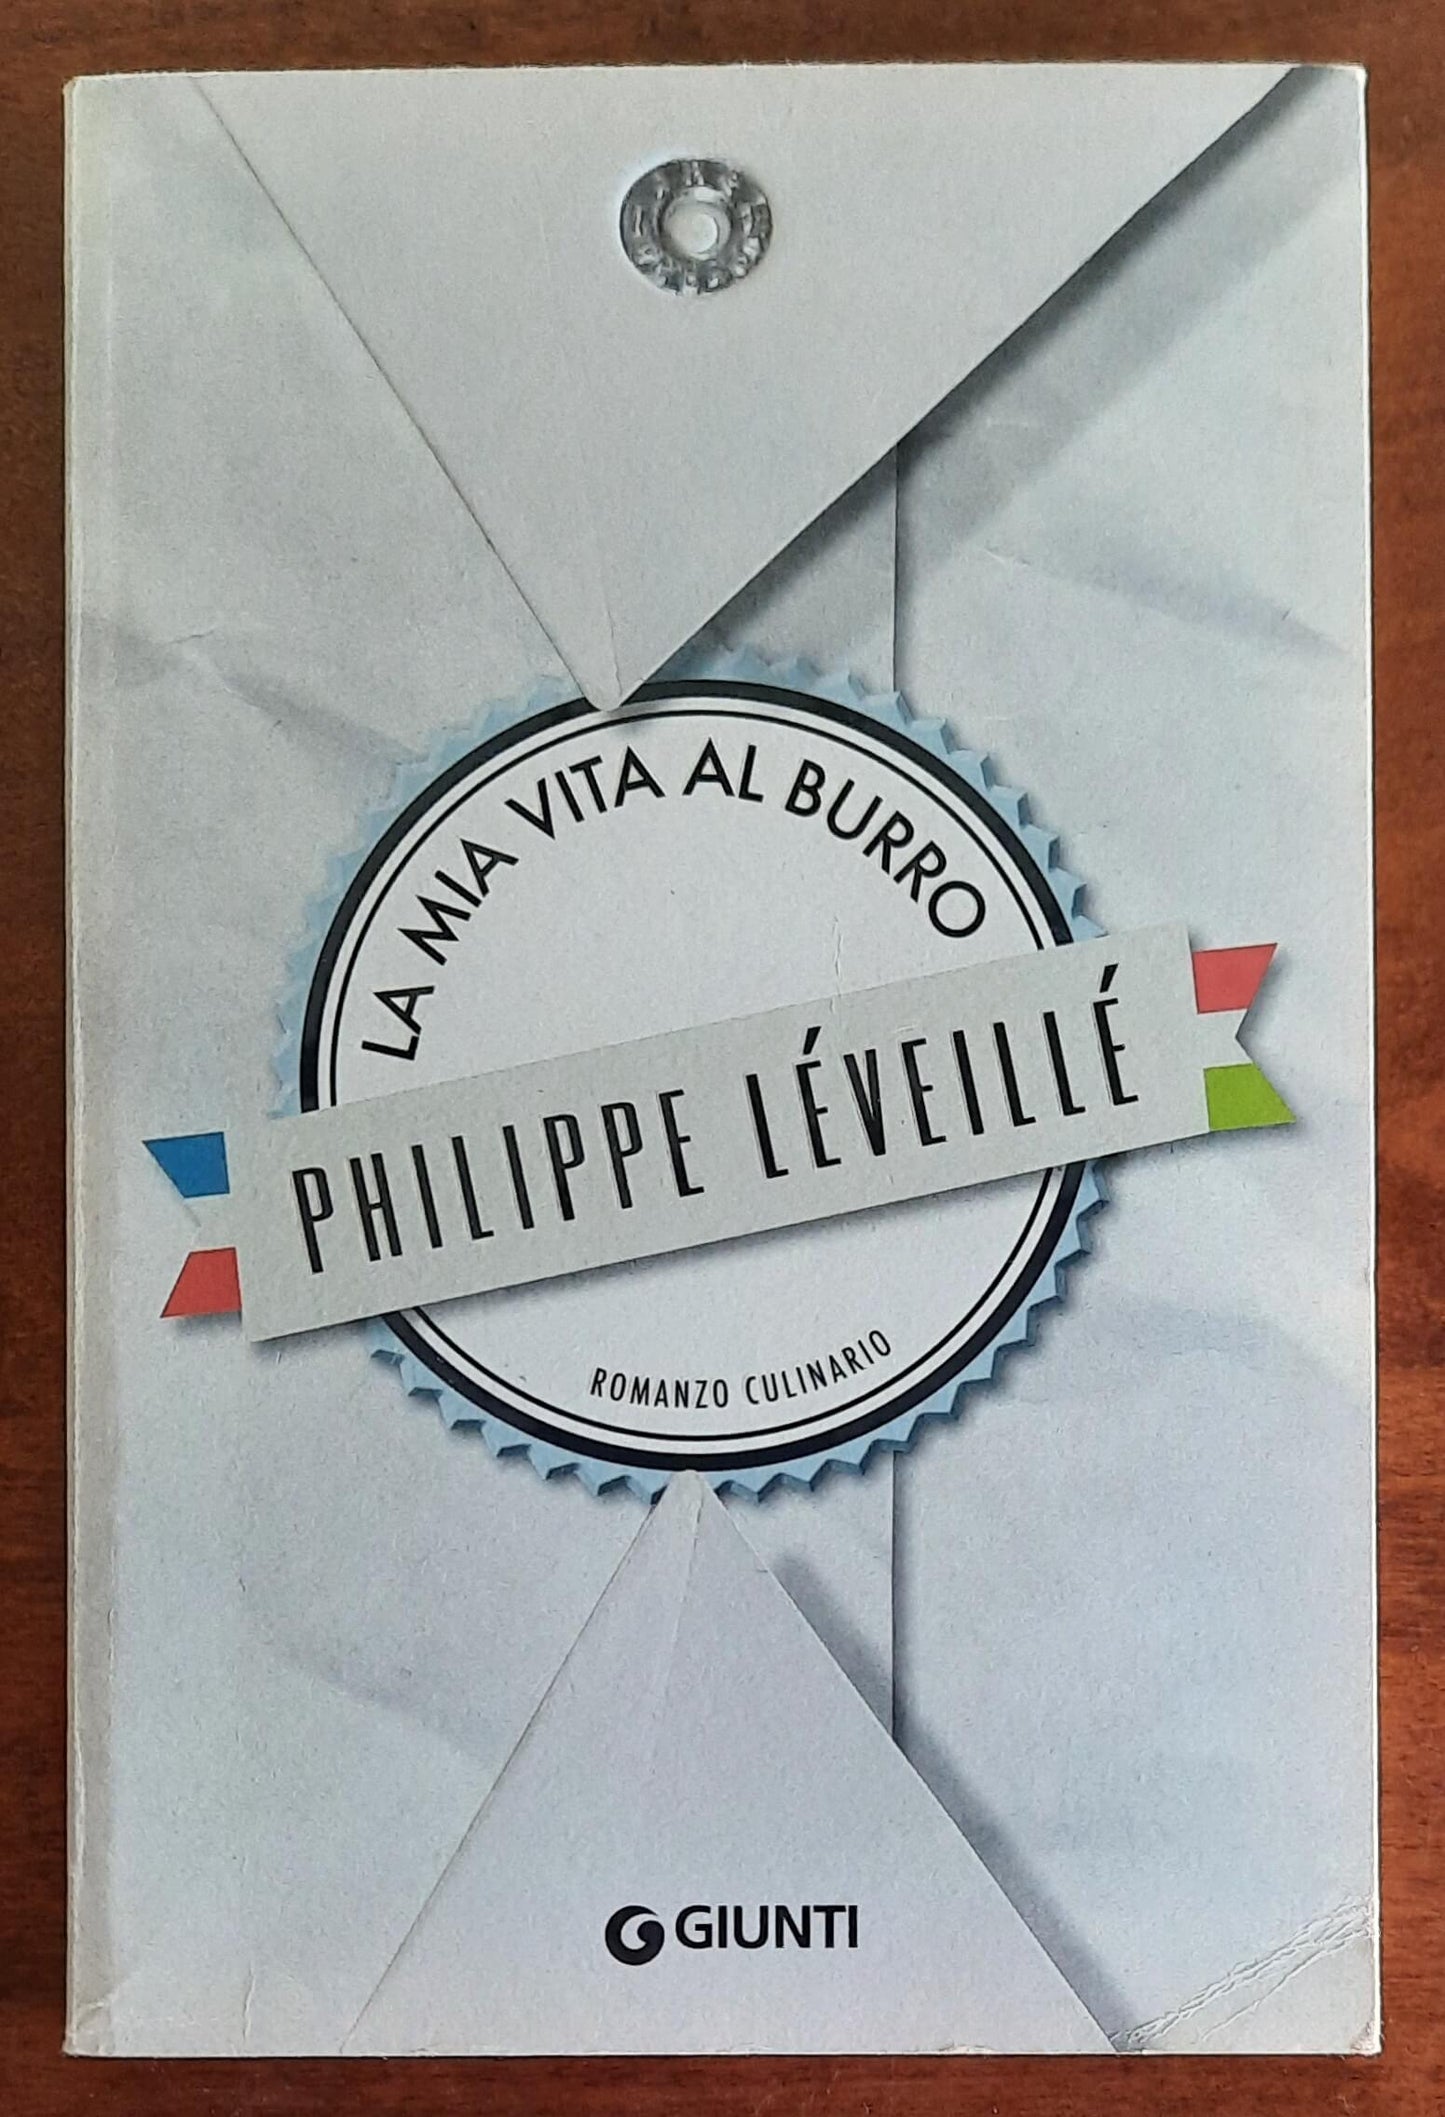 La mia vita al burro - di Philippe Leveille